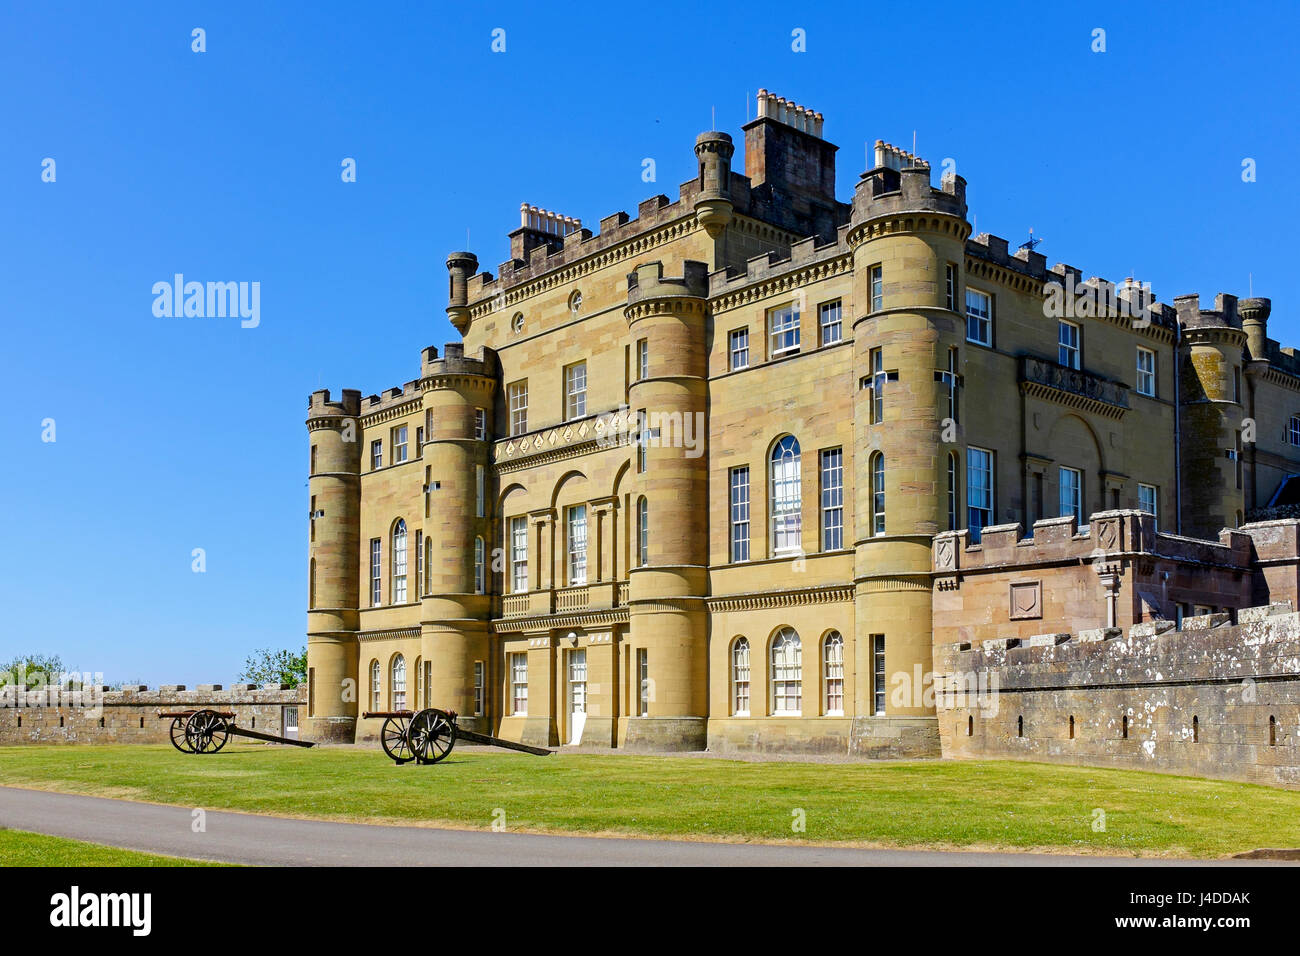 Le Château de Culzean, Ayrshire, Scotland, UK Banque D'Images